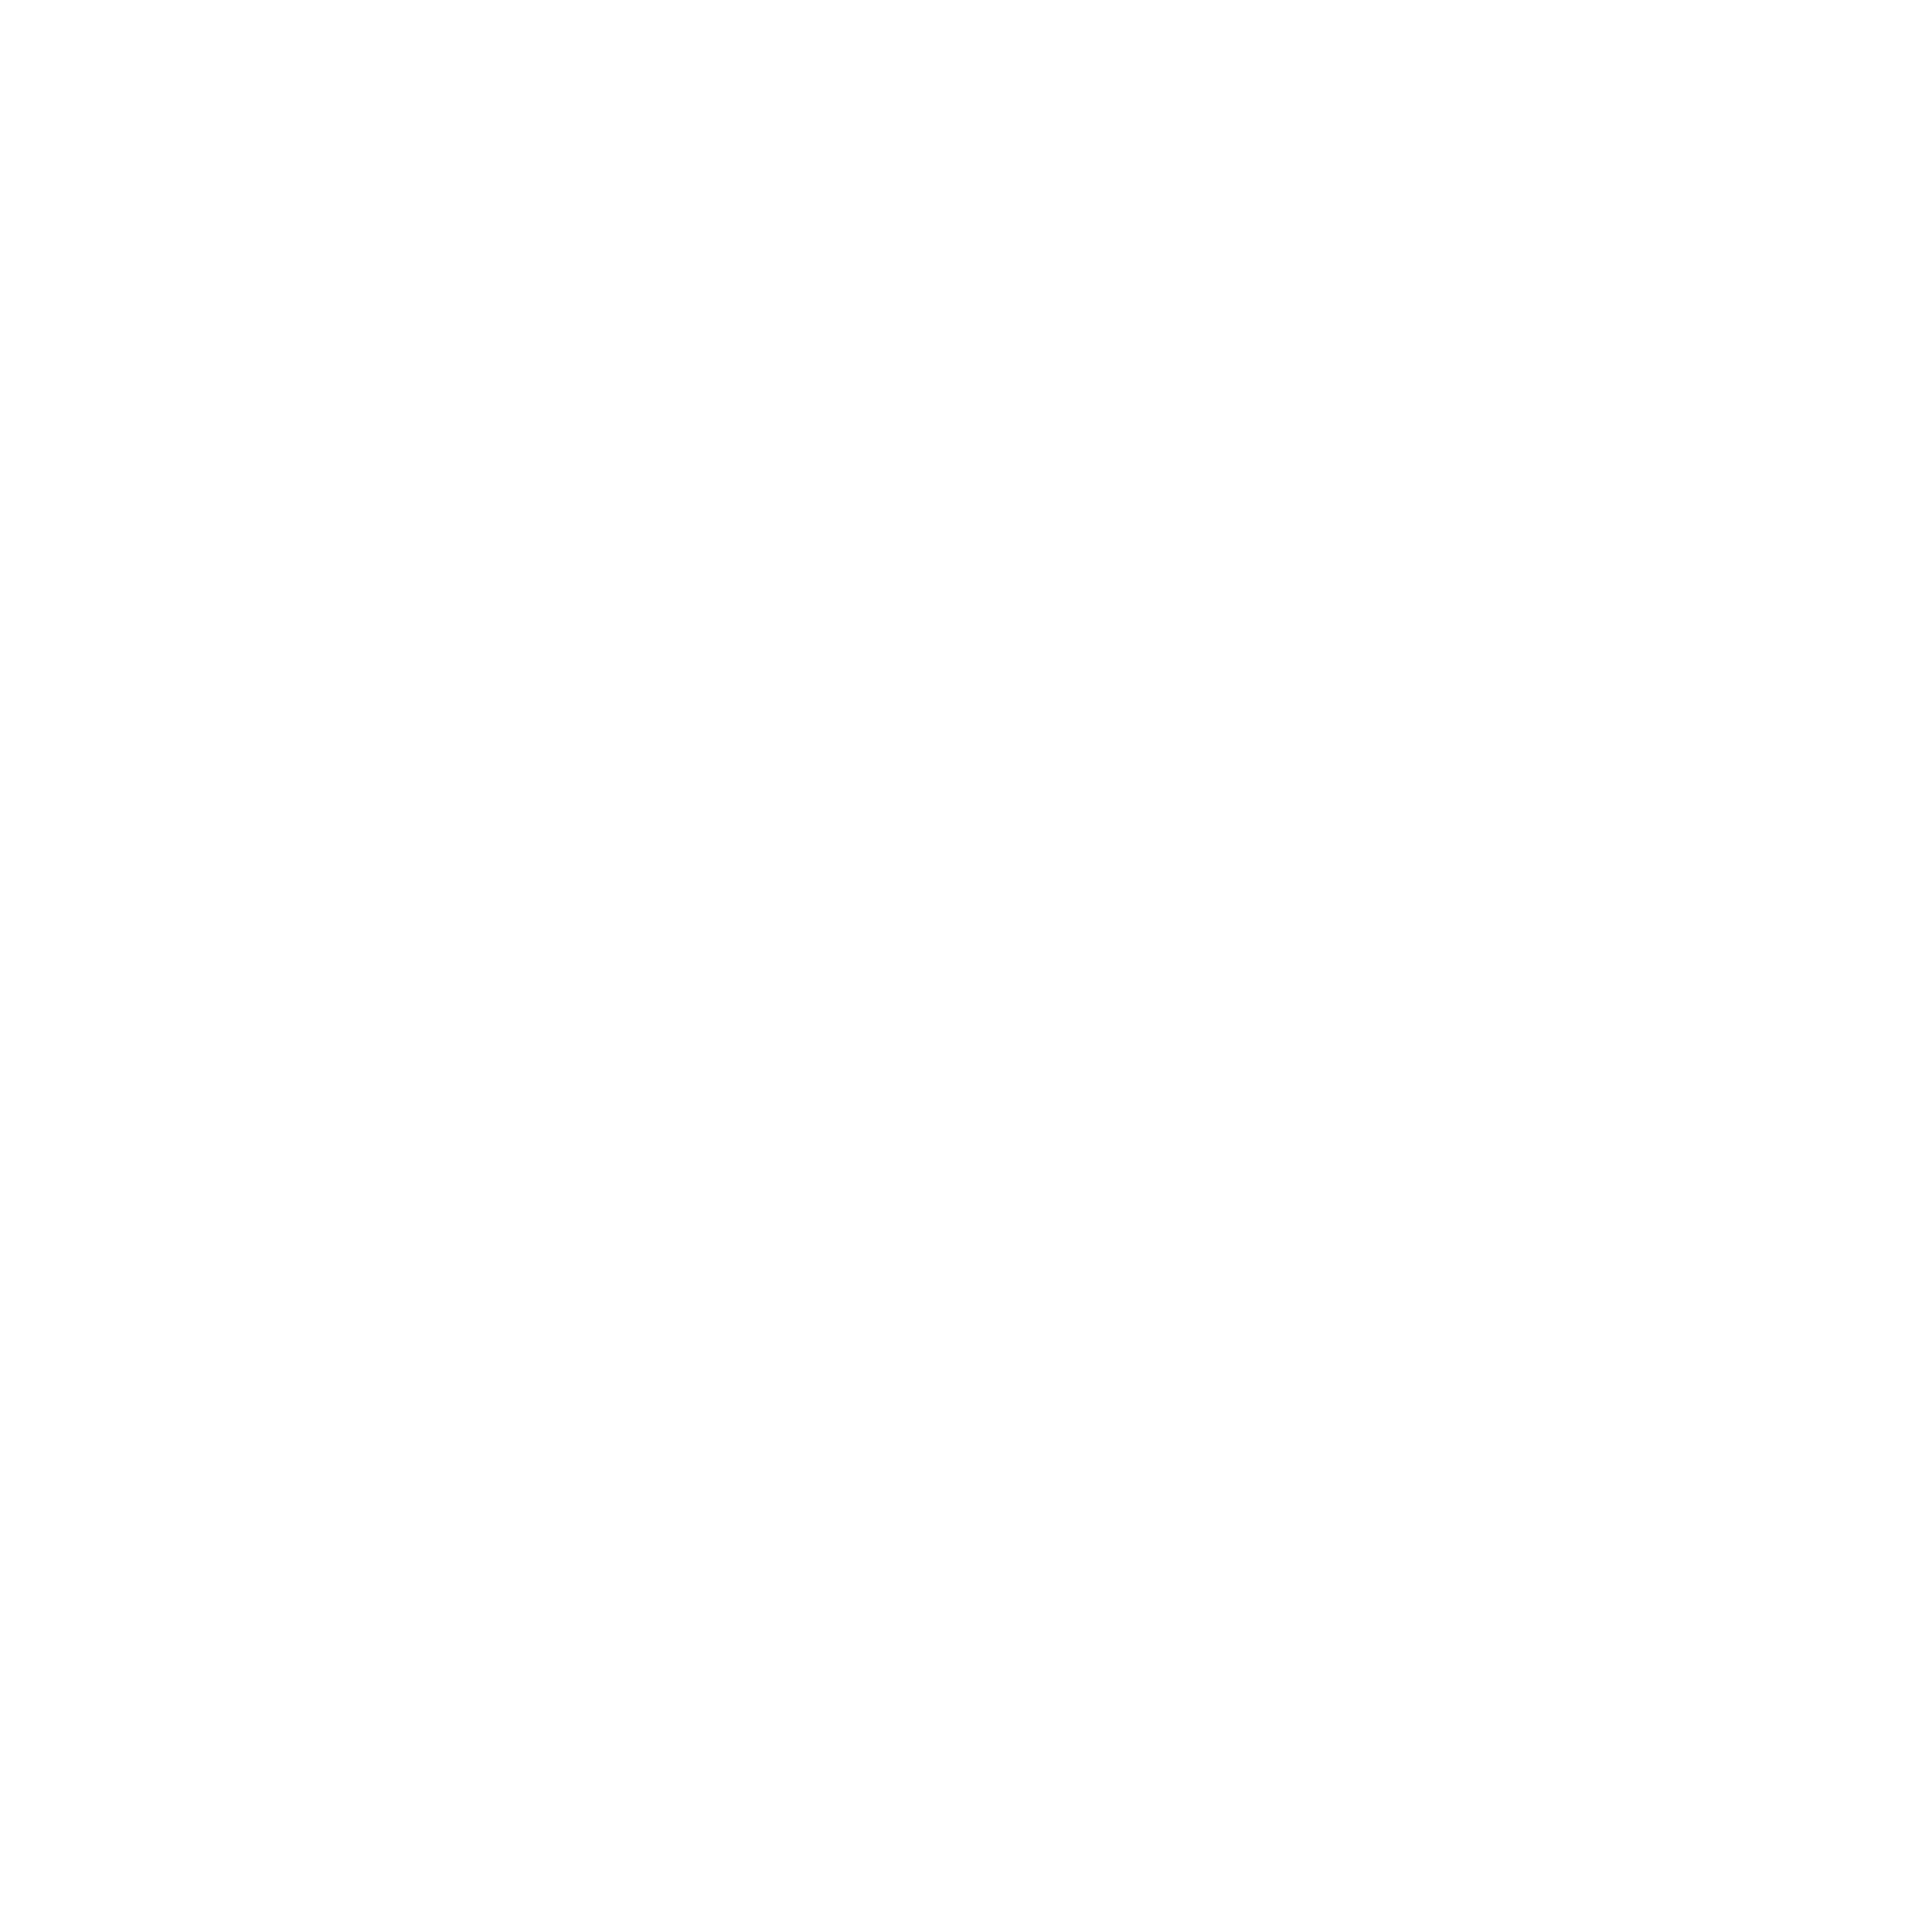 Kose Logo - Kose Logo PNG Transparent & SVG Vector